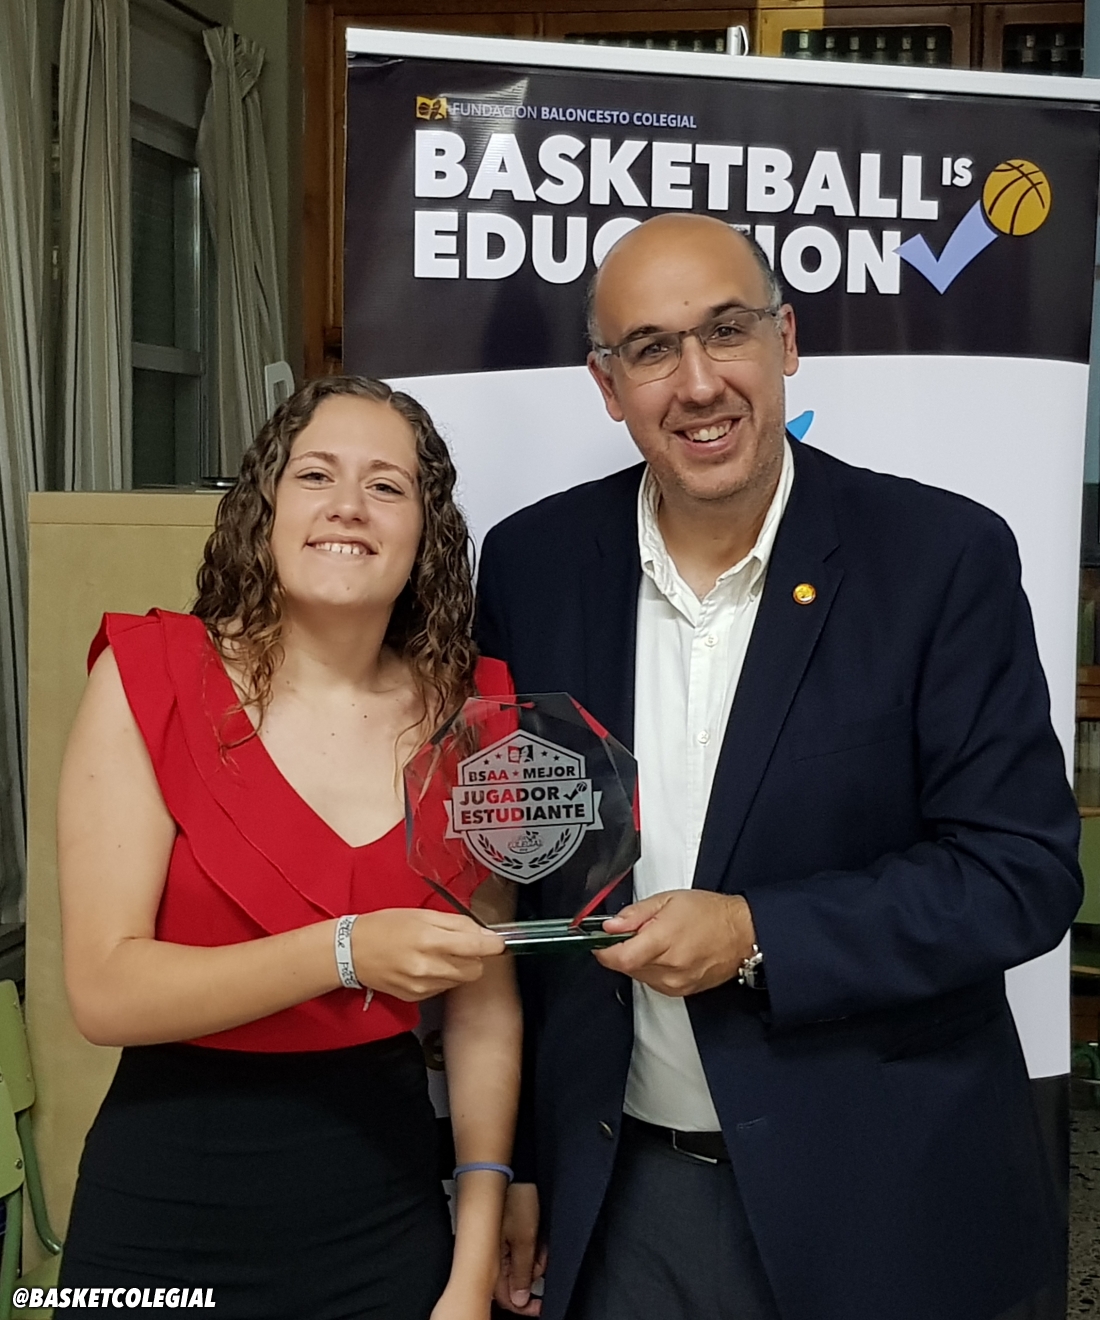 Premio BSAA Mejor jugador-estudiante Sevilla 2018 1